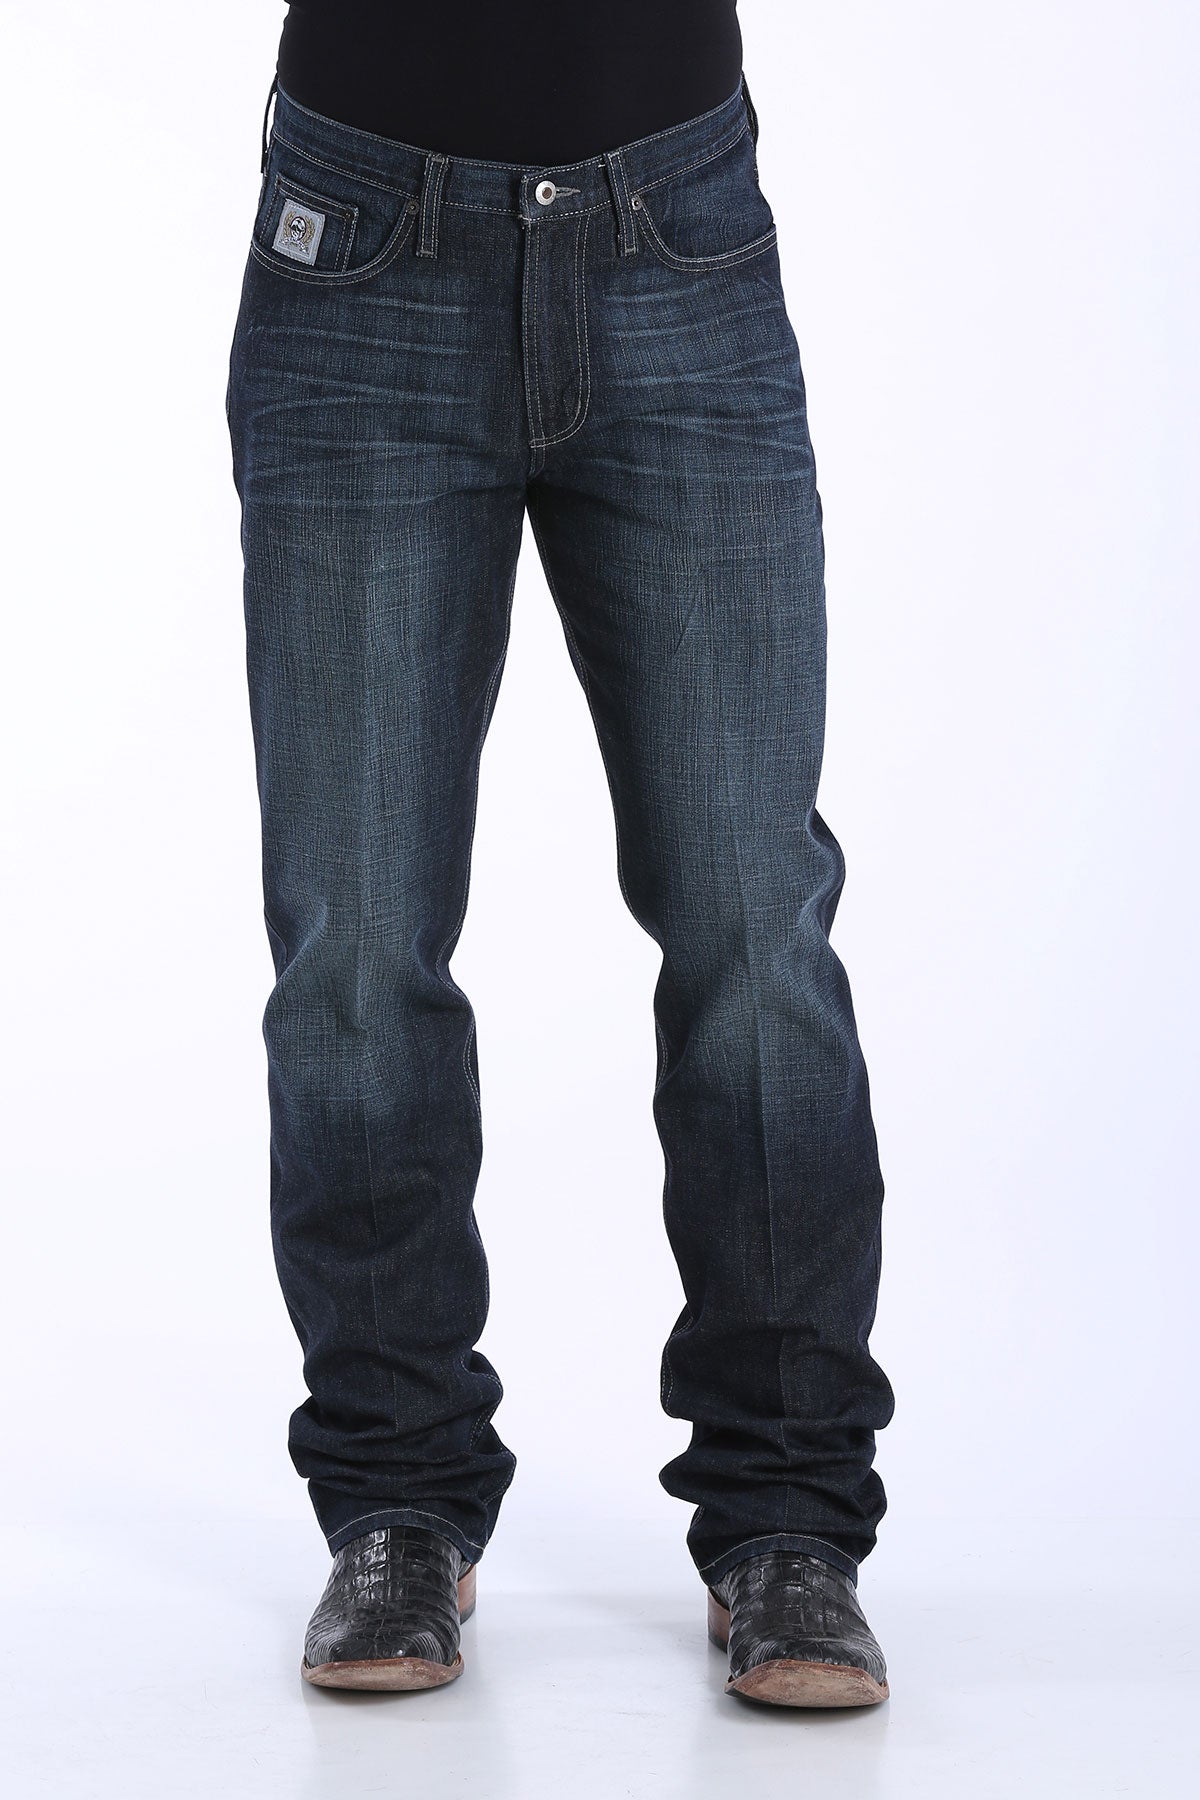 cinch flex jeans